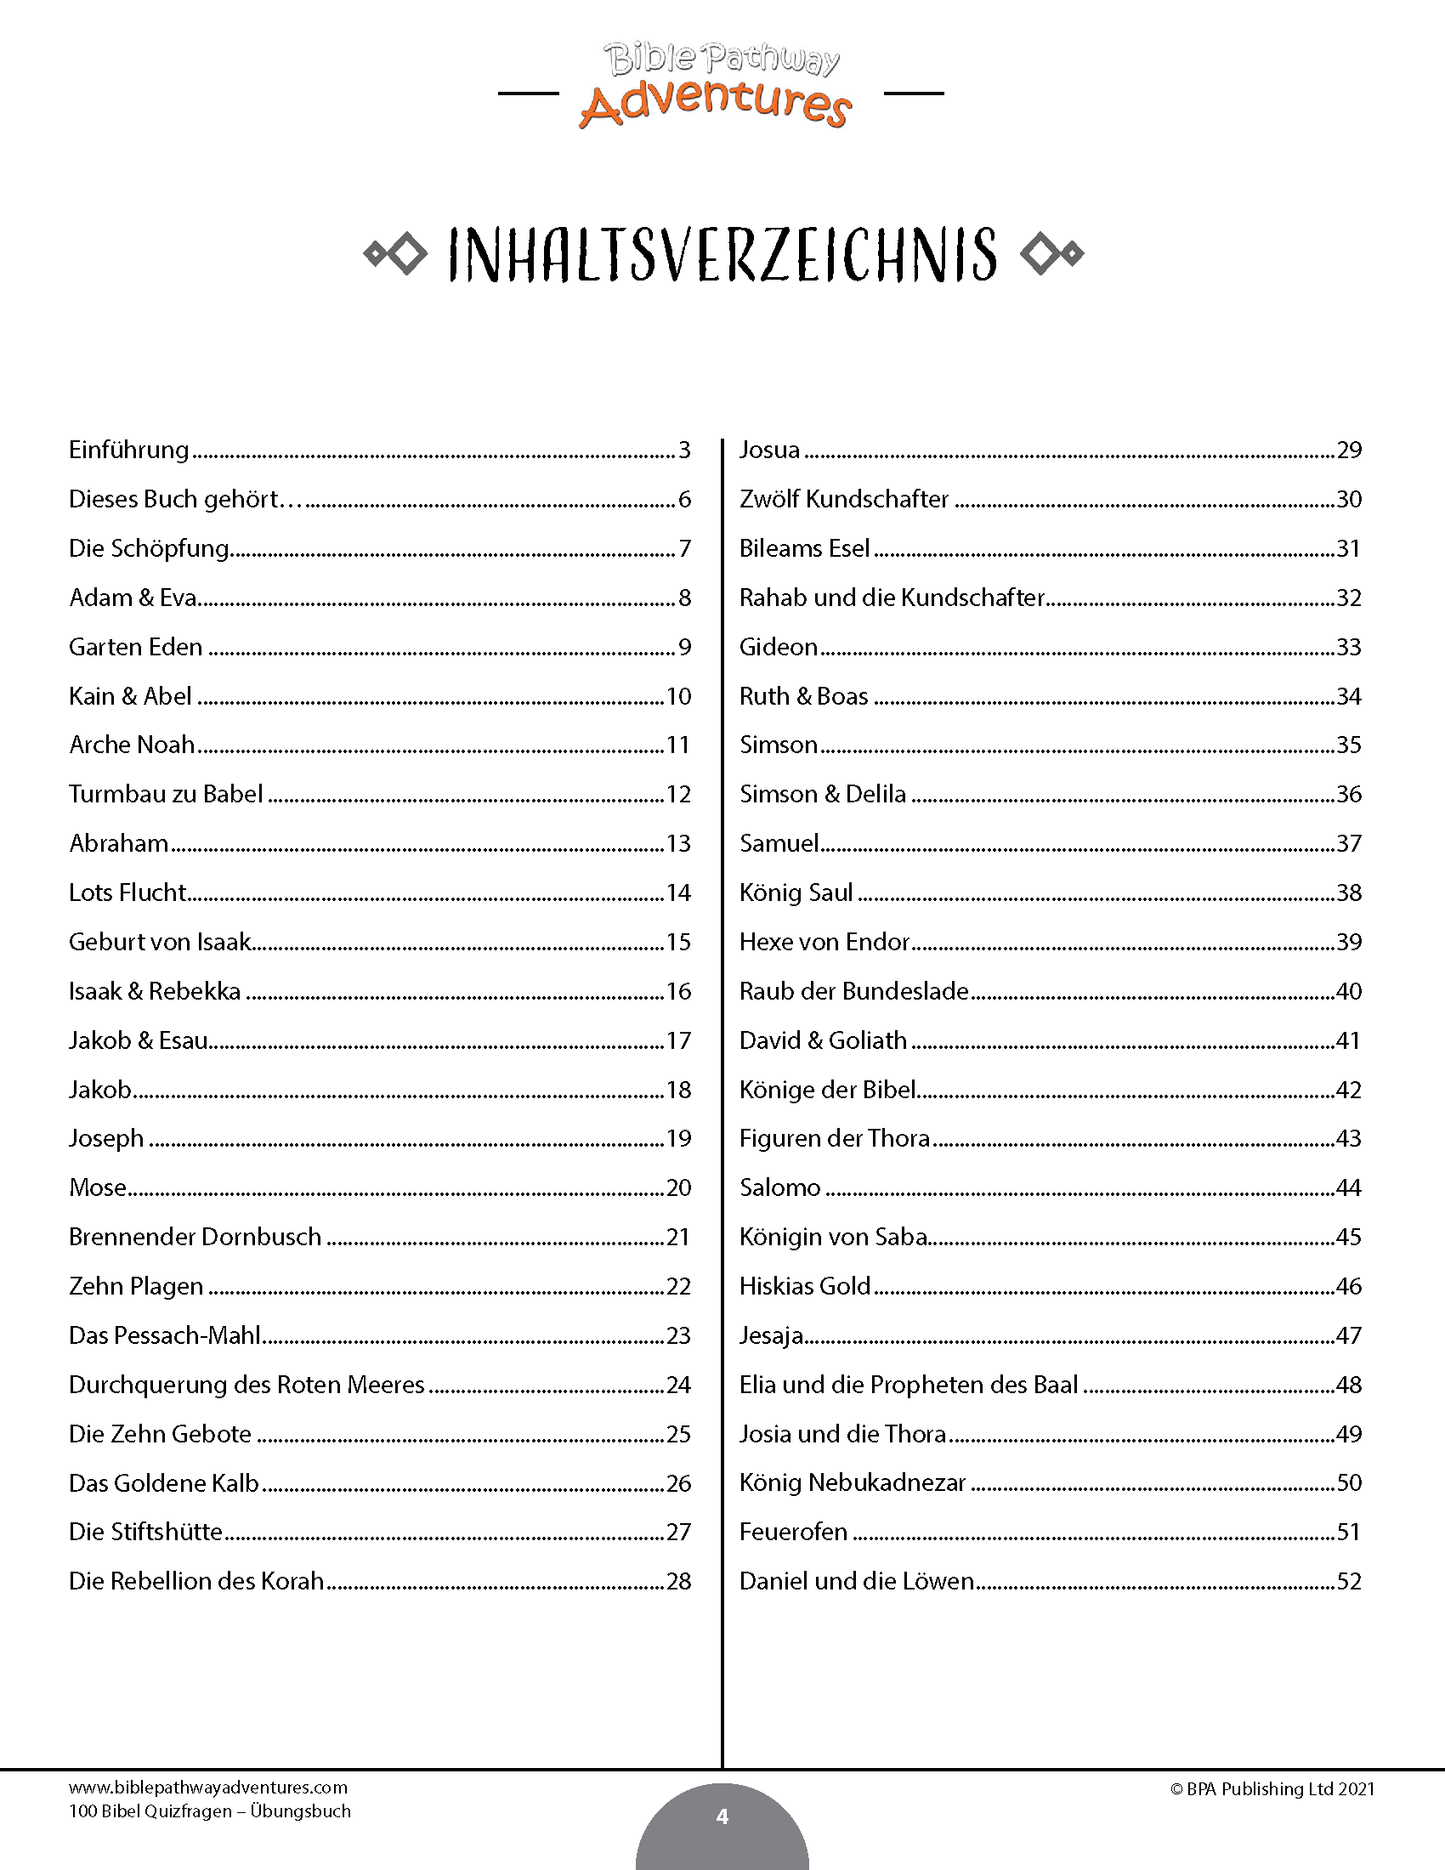 100 Bibel Quizfragen – Übungsbuch